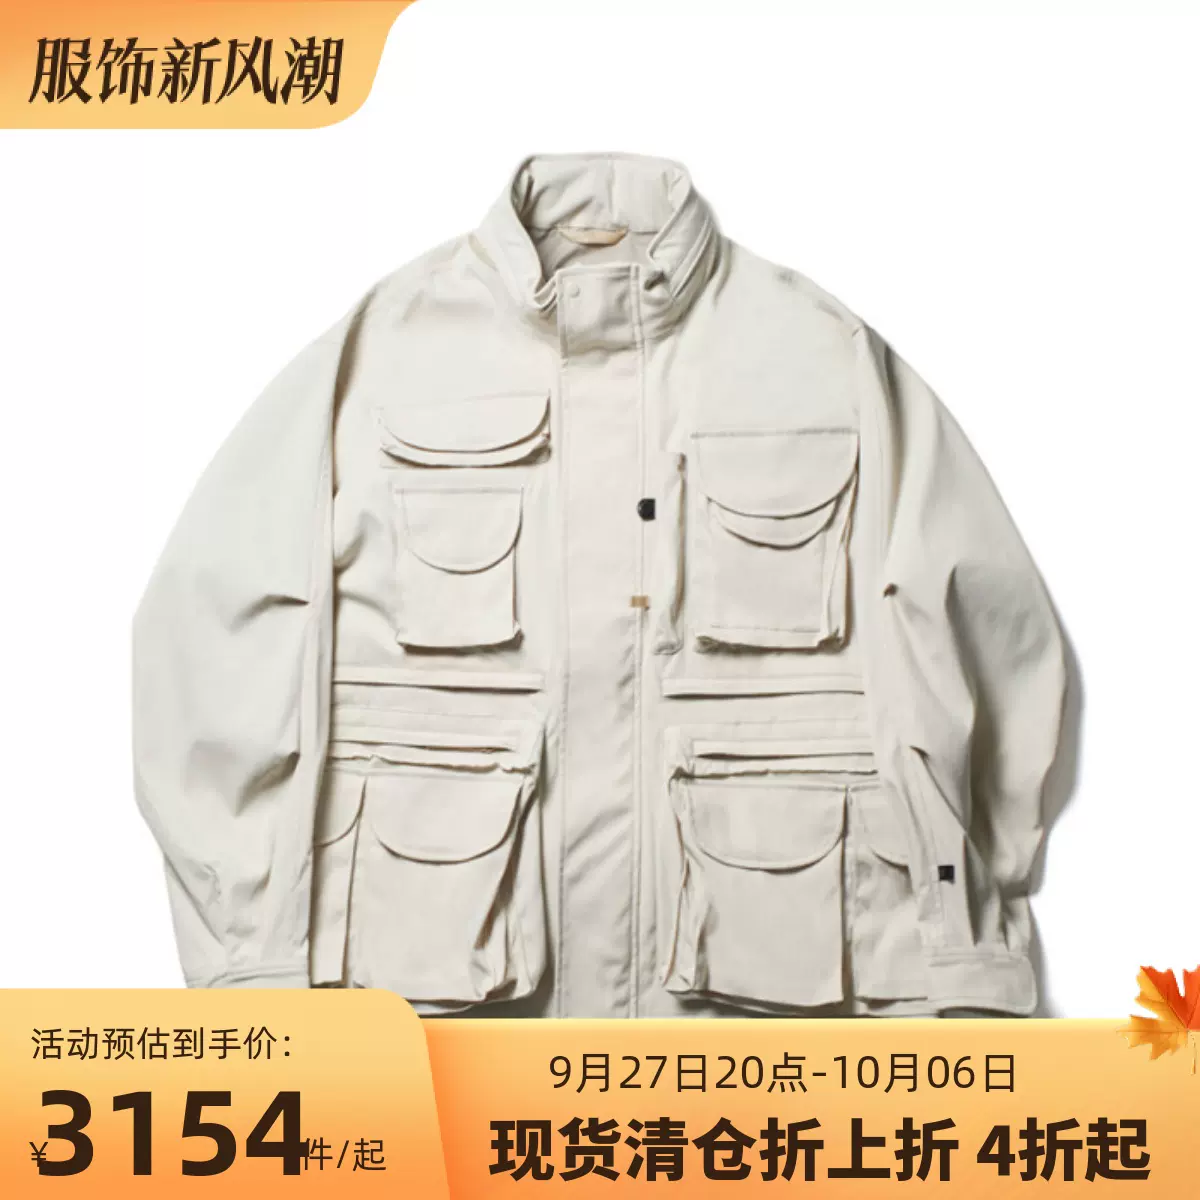 国仓DAIWA PIER39 TECH PERFECT FISHING JACKET多口袋夹克22AW-Taobao